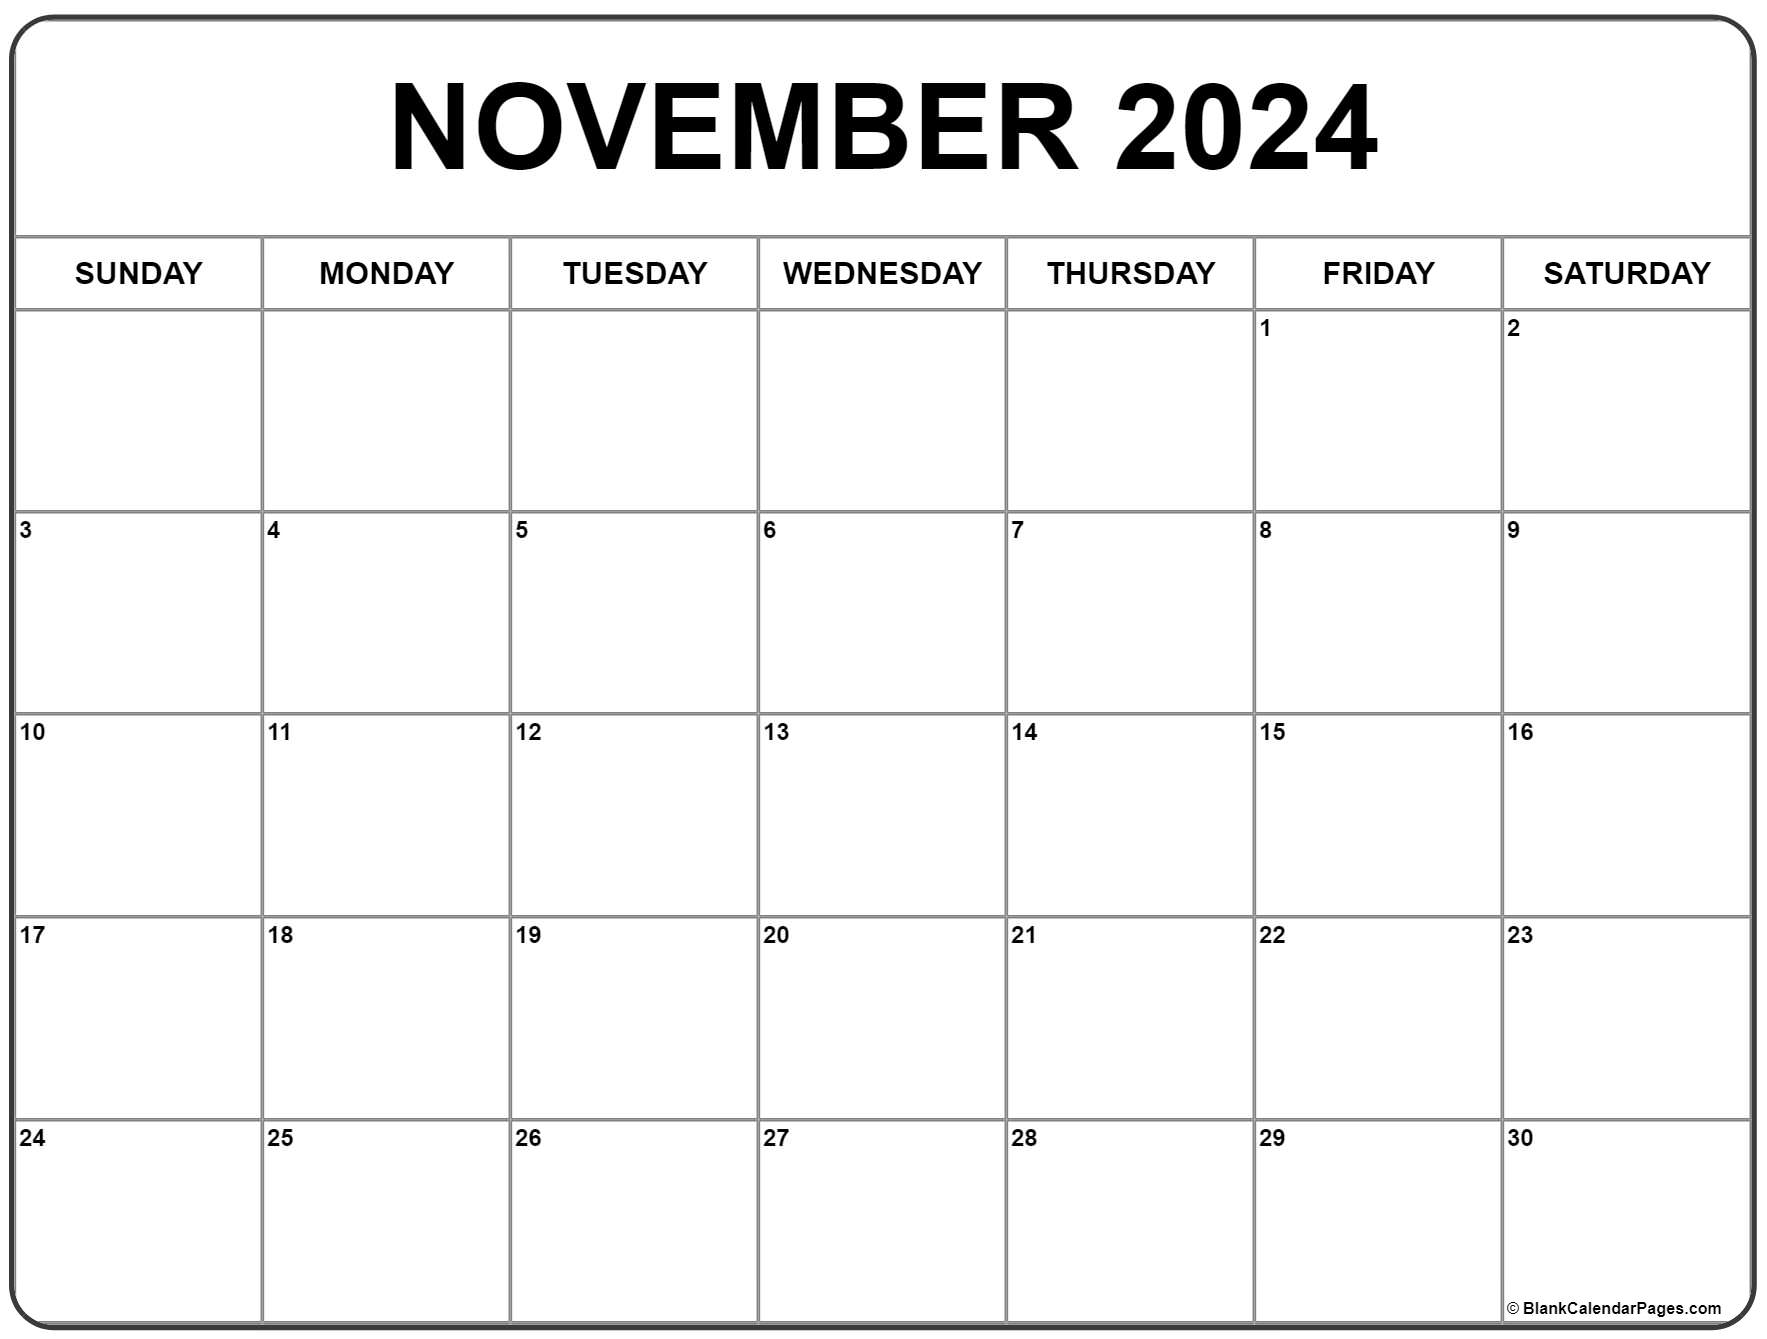 November 2022 Blank Calendar November 2022 Calendar | Free Printable Calendar Templates